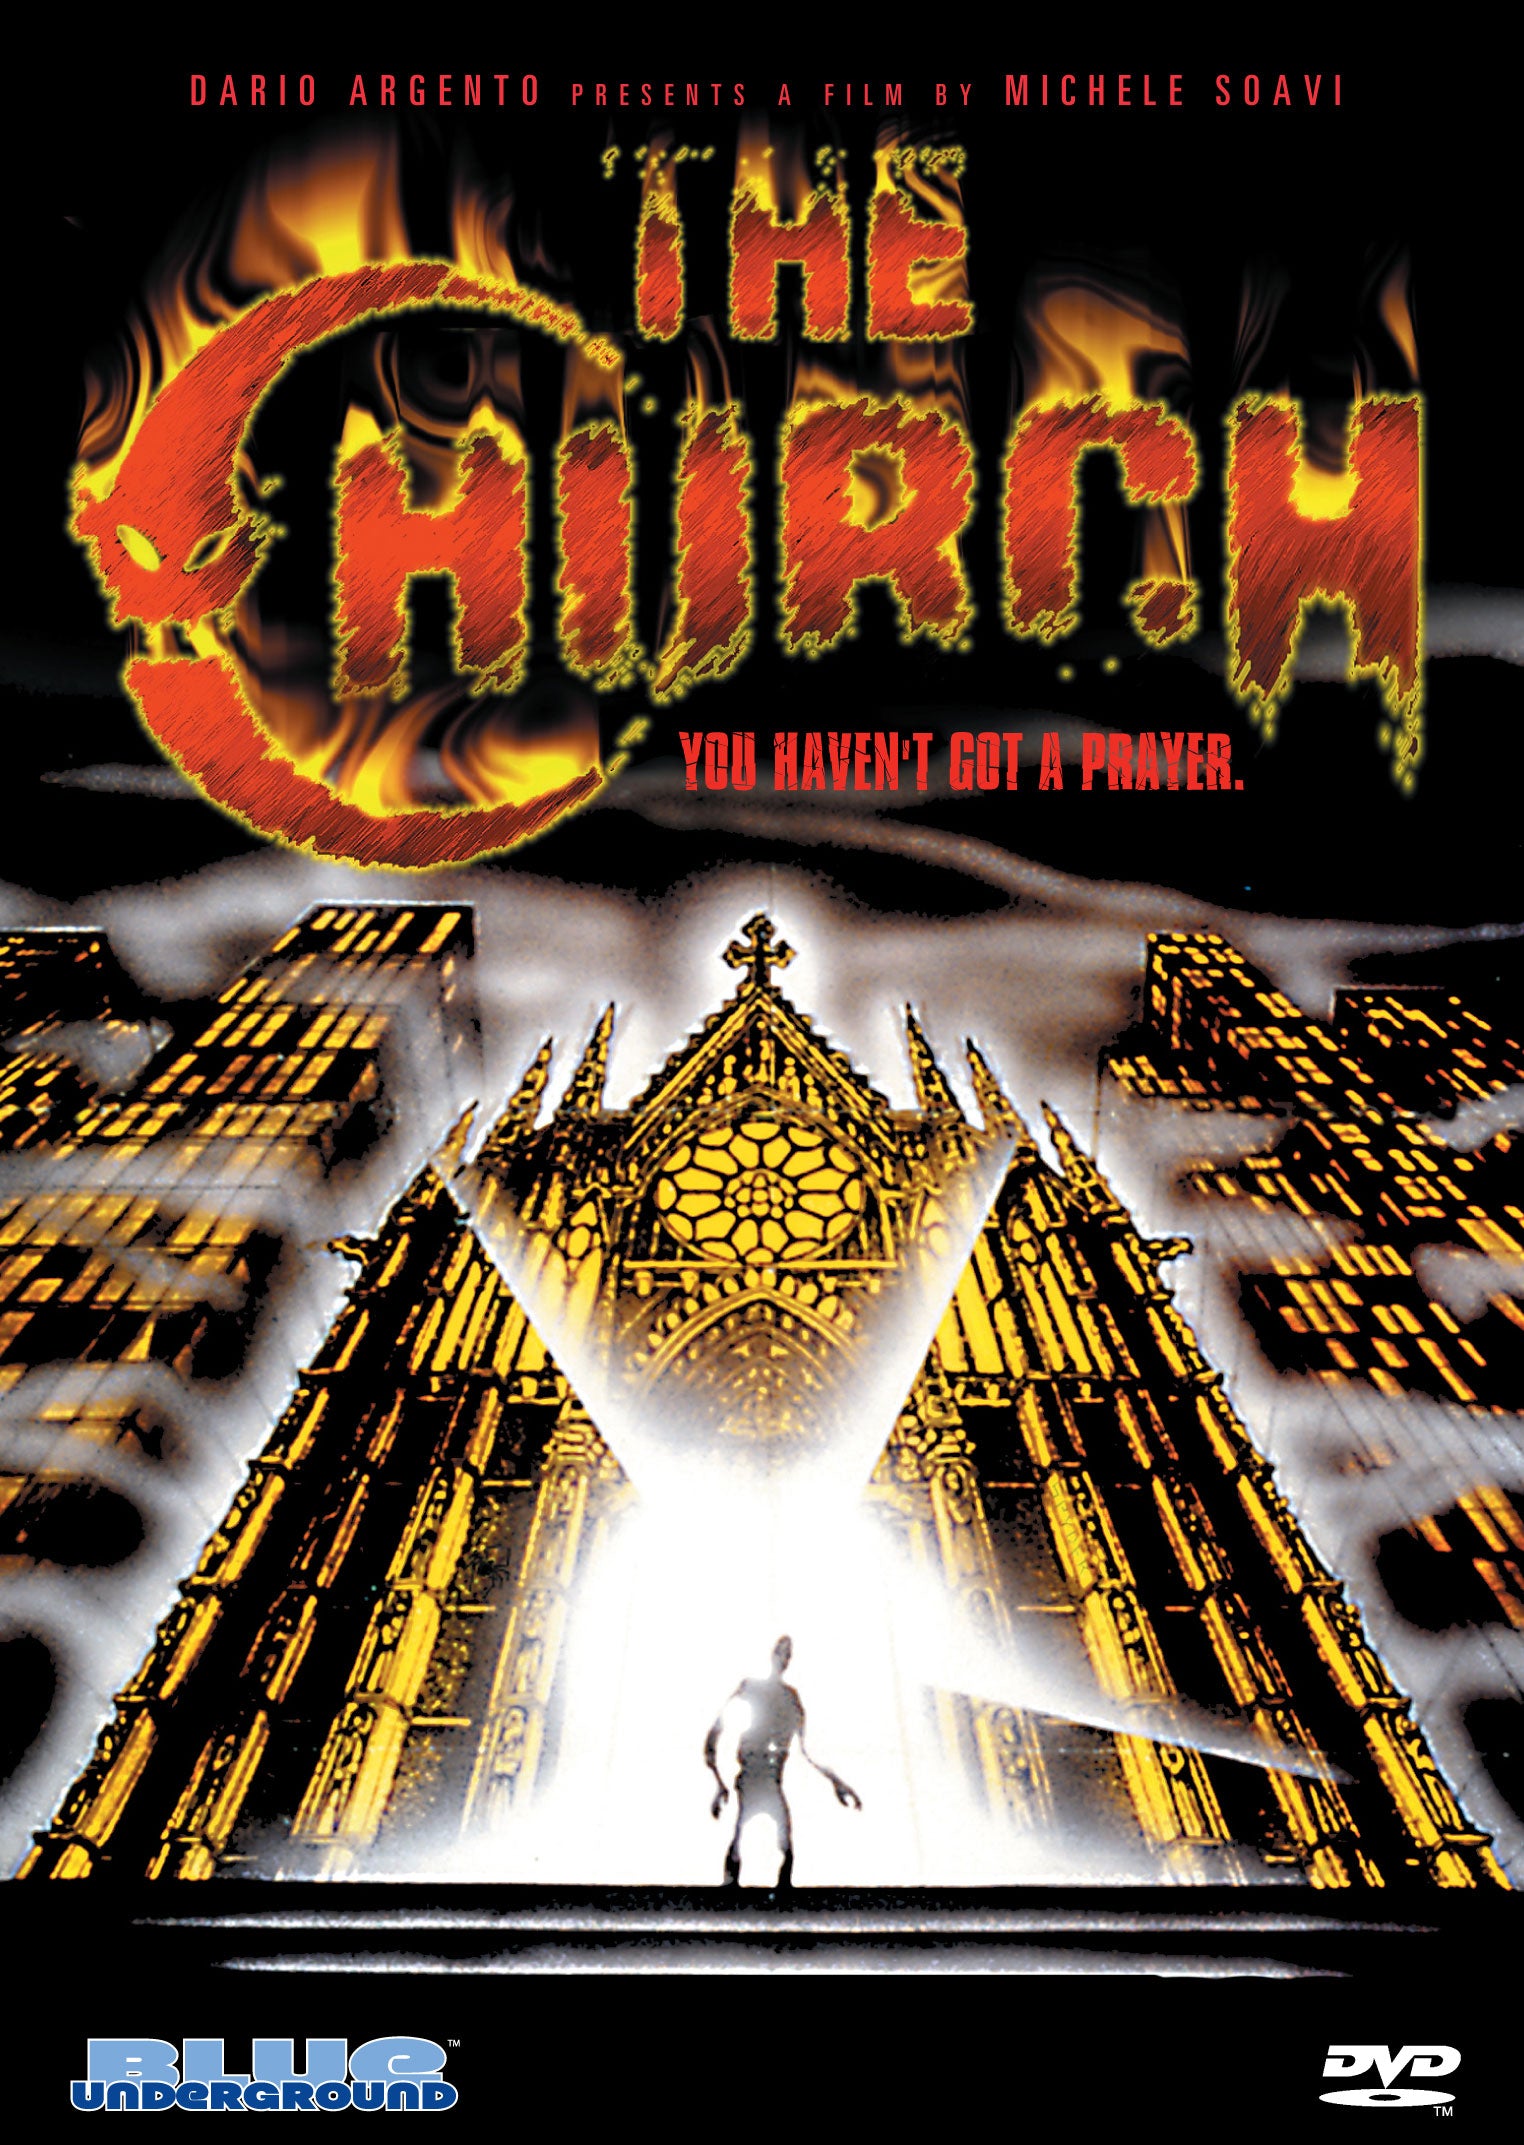 THE CHURCH DVD